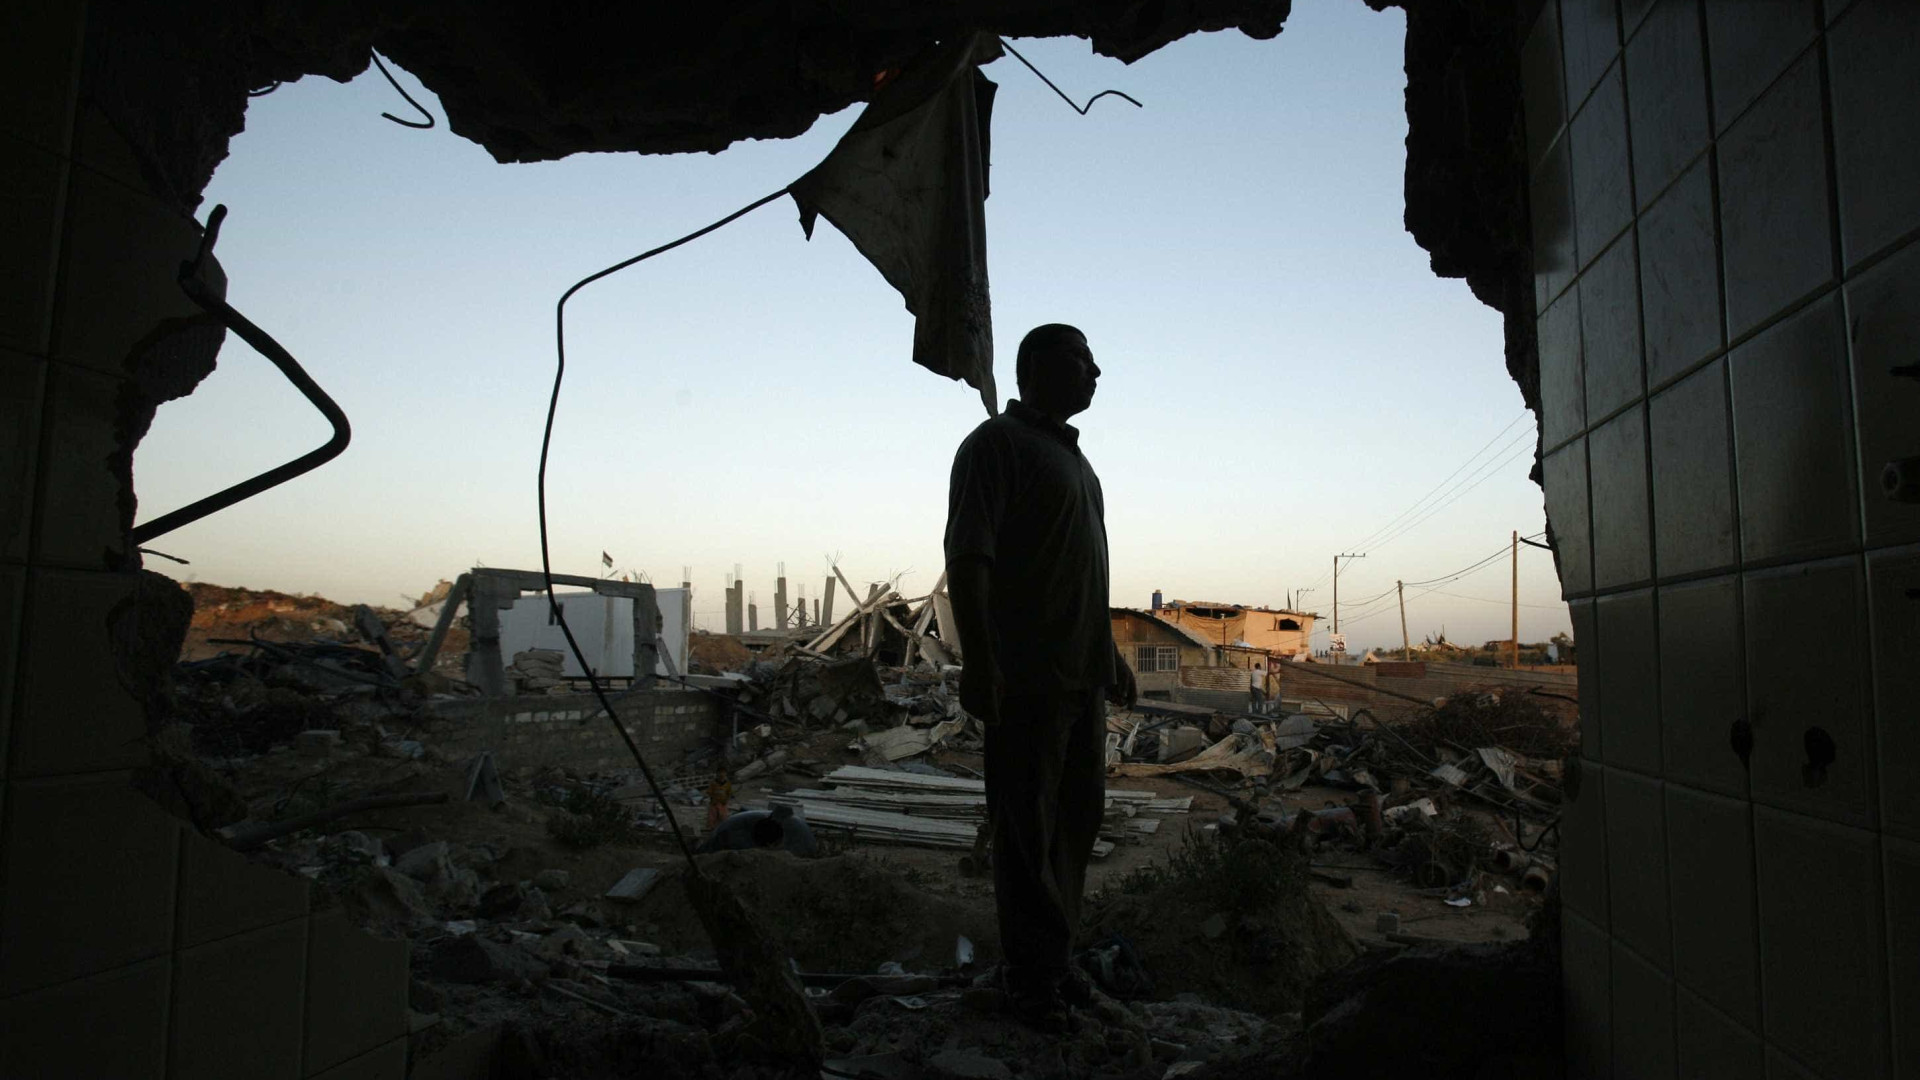 Empresa israelita corta eletricidade para Gaza em retaliação a ataques